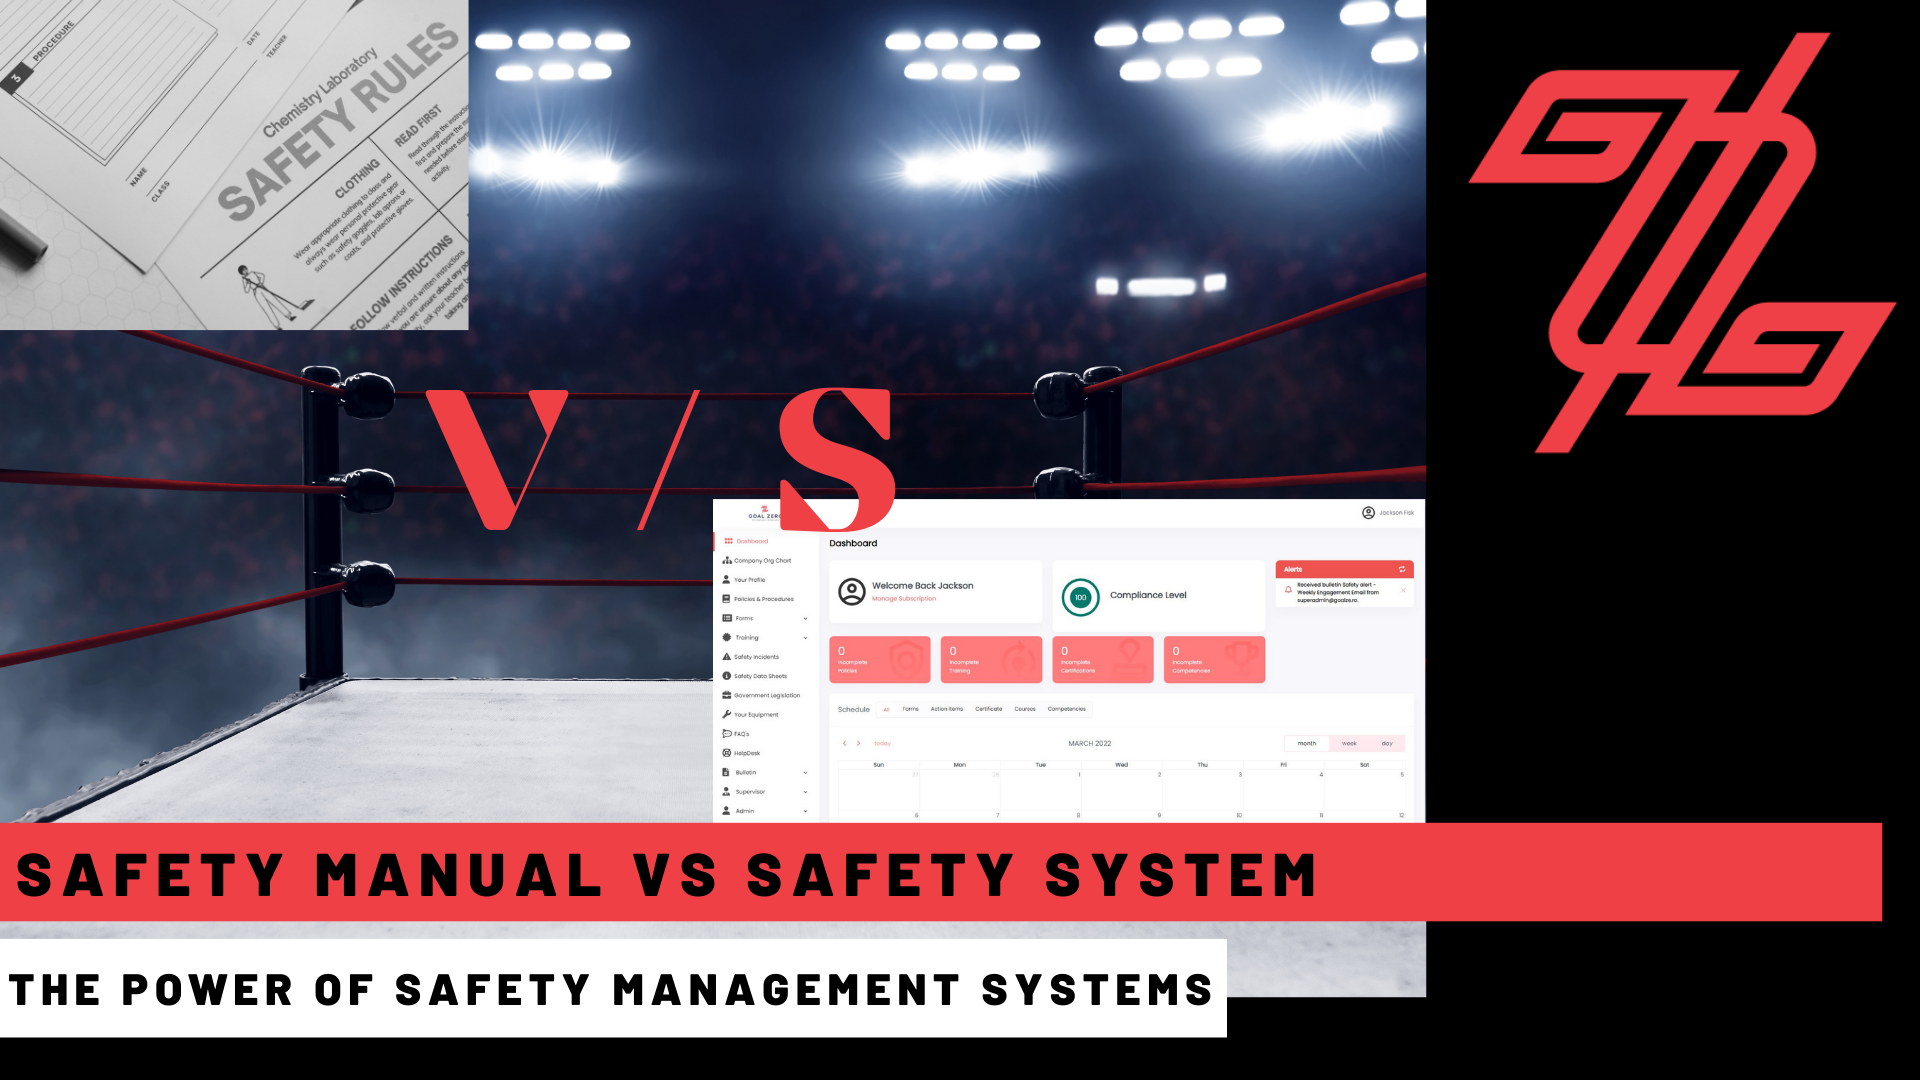 Safety Manual vs Safety System